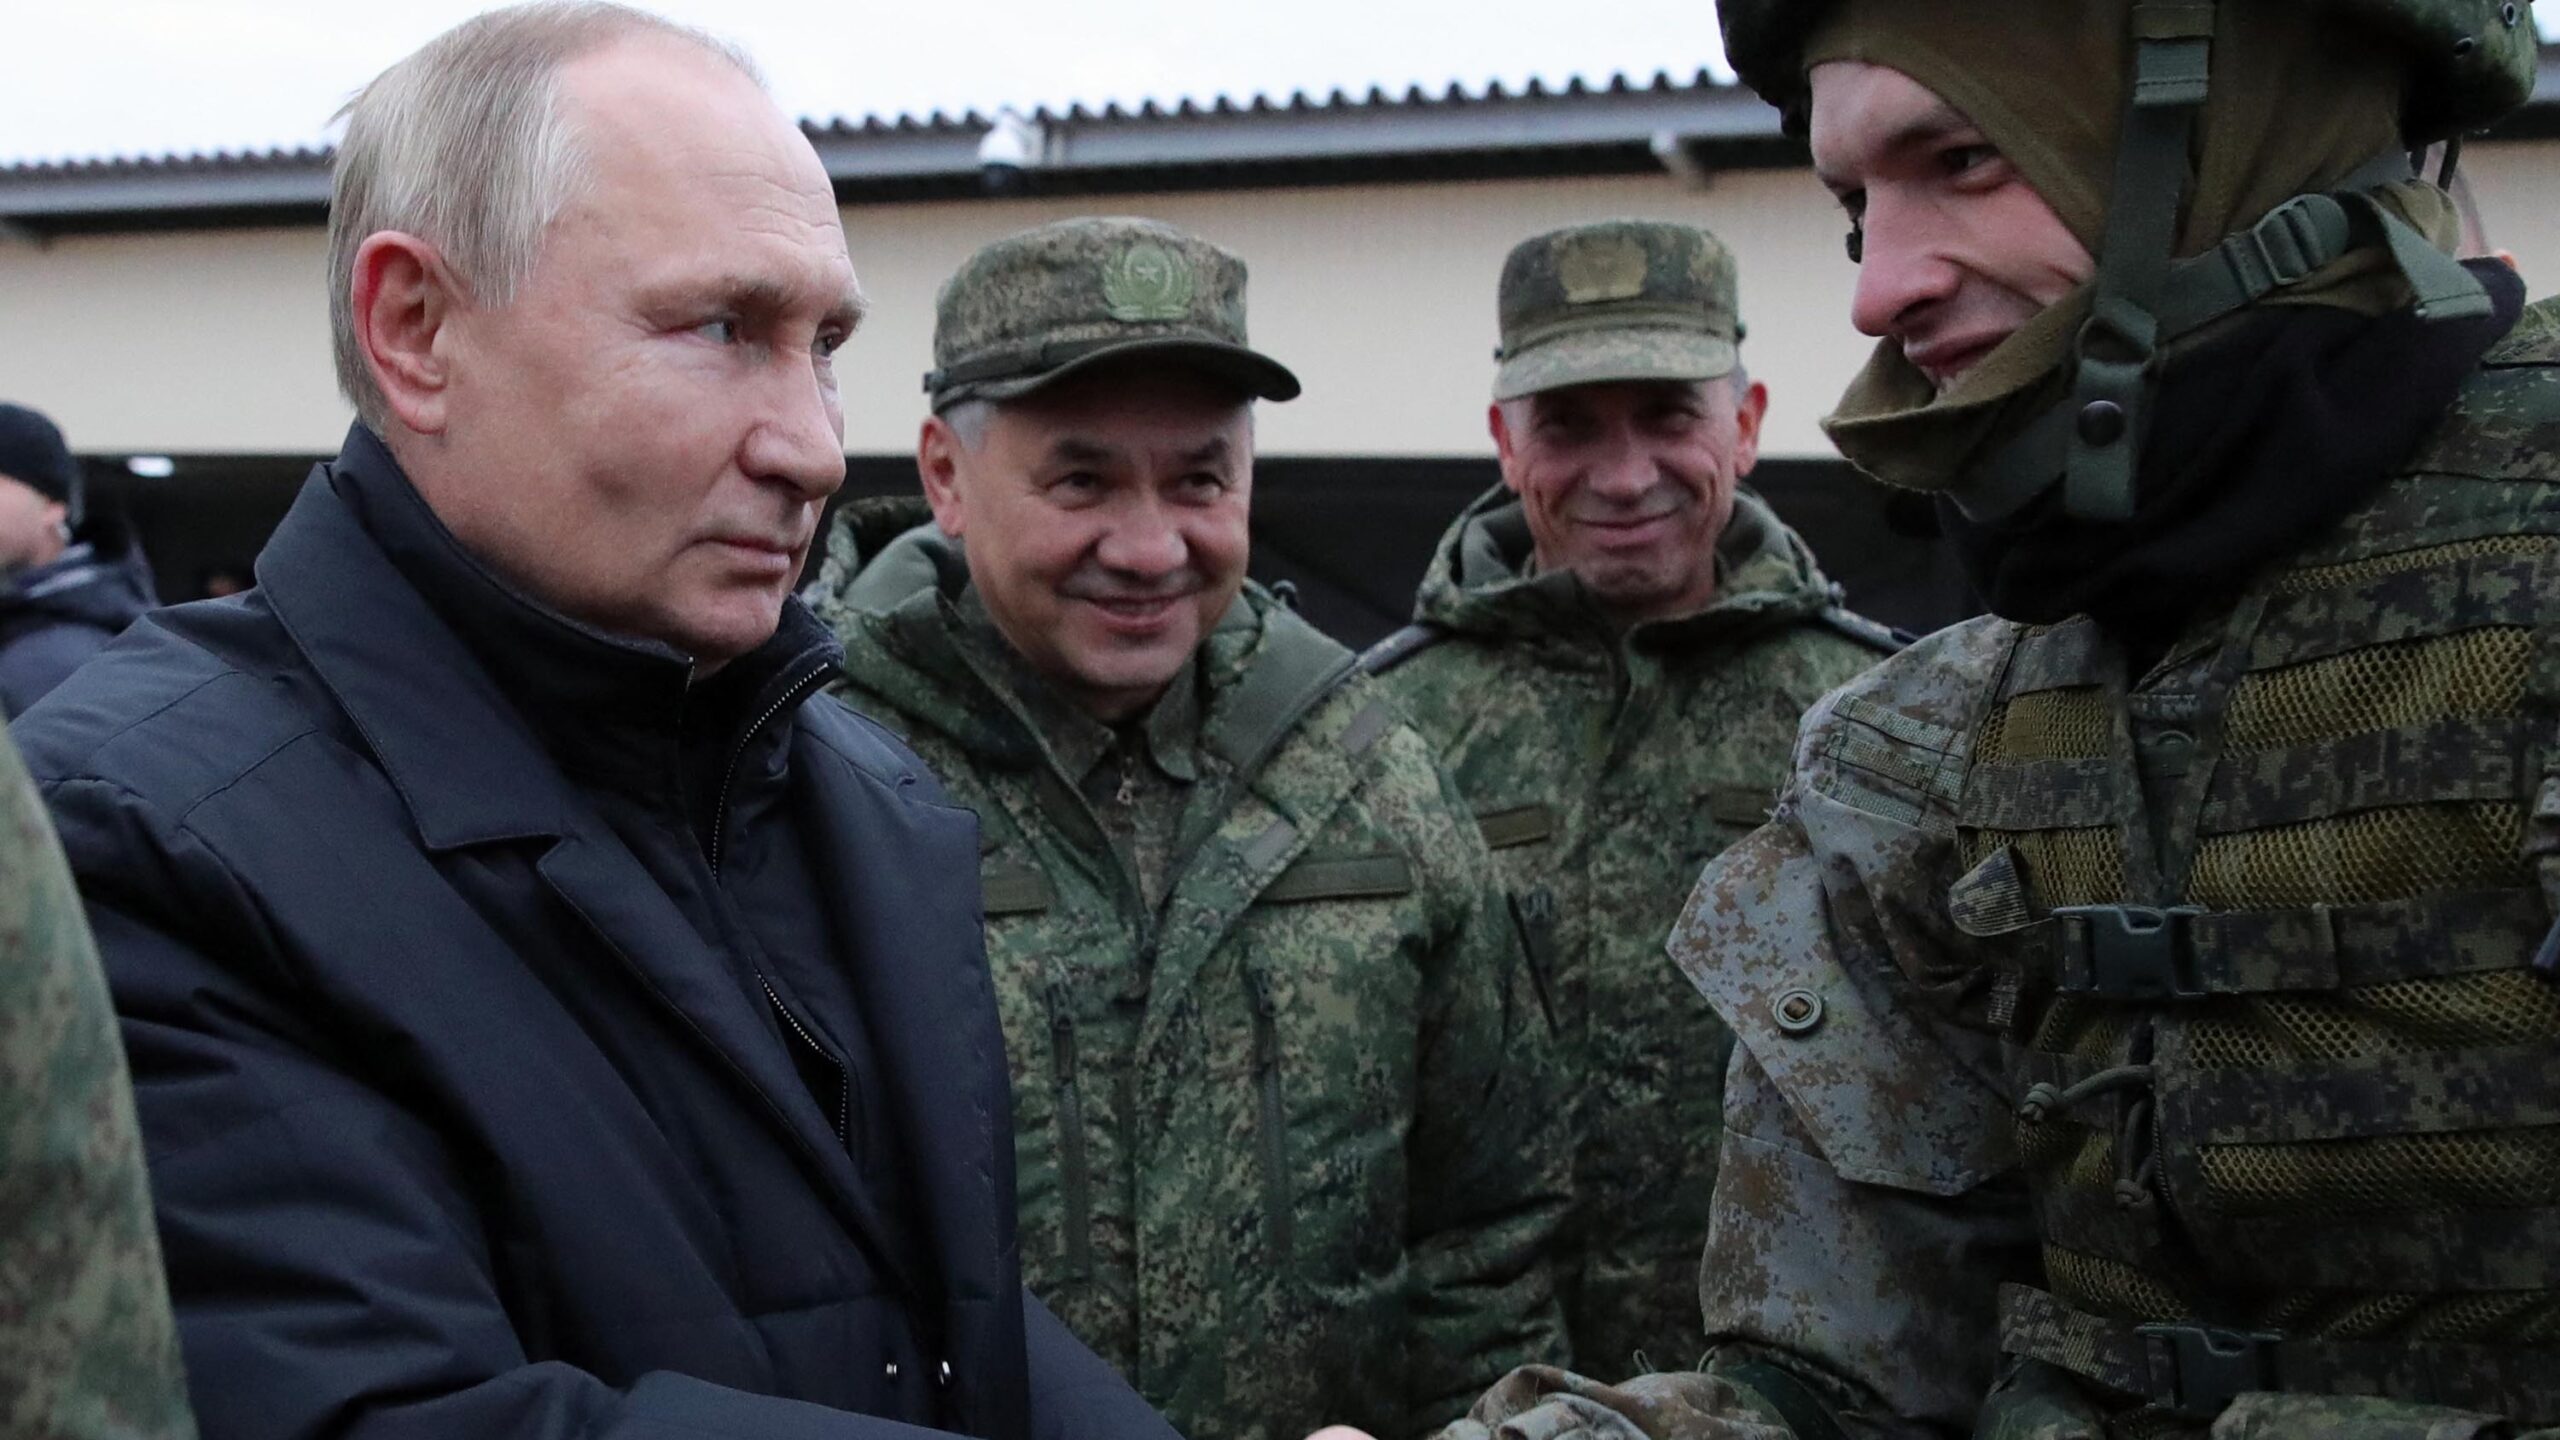 El ministro de defensa de Rusia acusa a Ucrania de preparar una “provocación” con dispositivos radiactivos